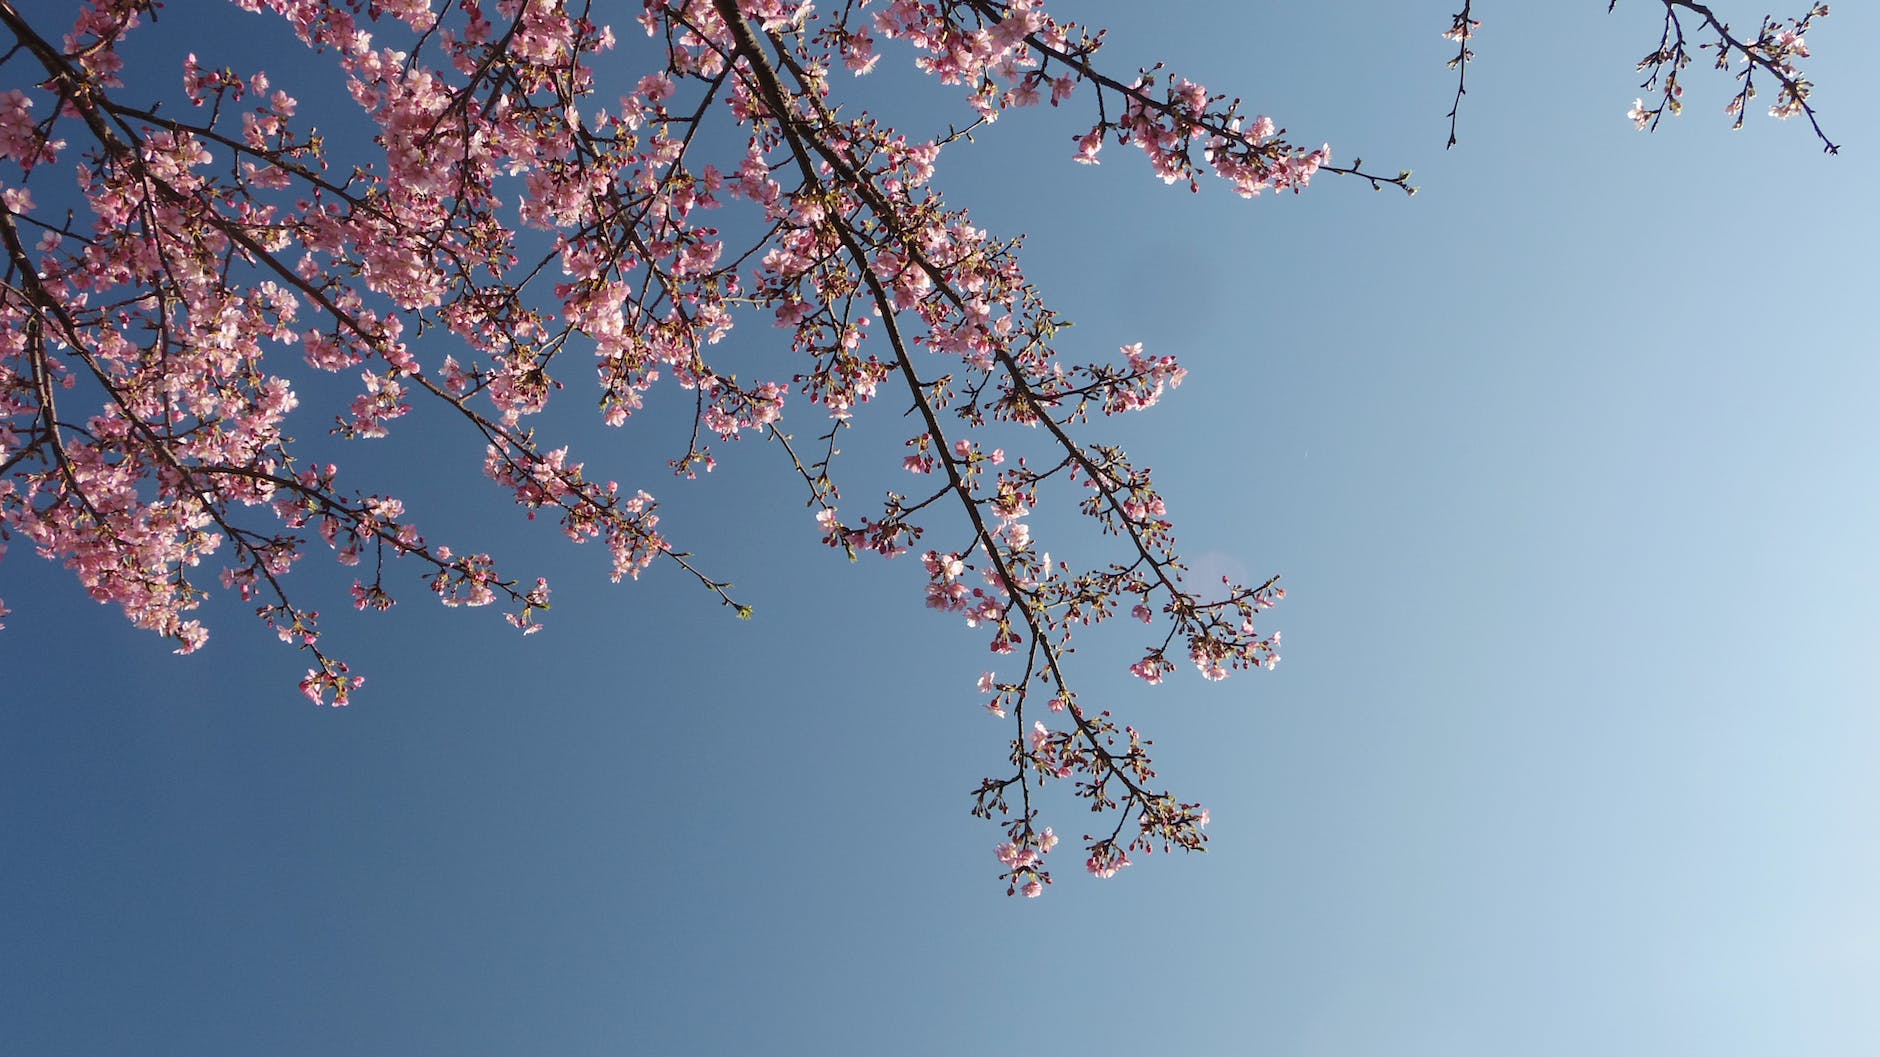 cherry blossom against a blue sky